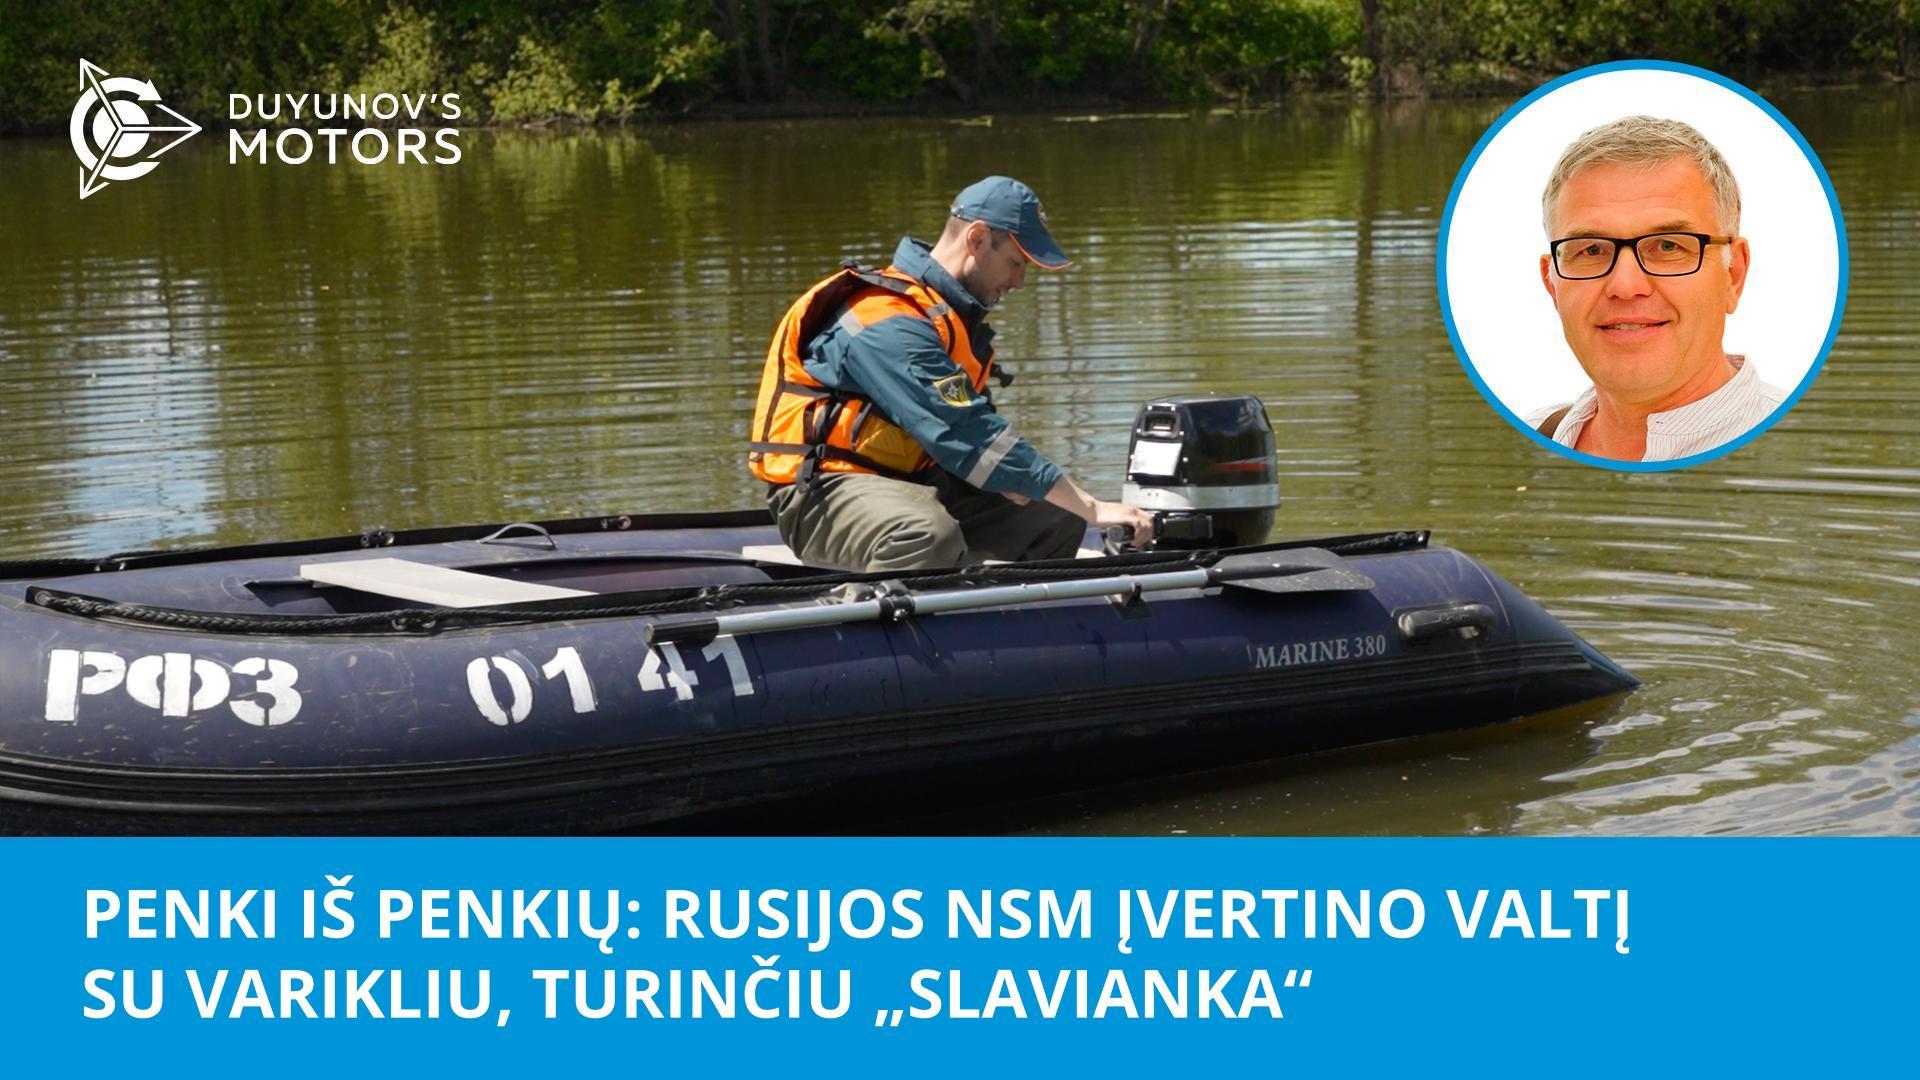 „Penki iš penkių“: Rusijos NSM įvertino valtį su varikliu, turinčiu „Slavianka“